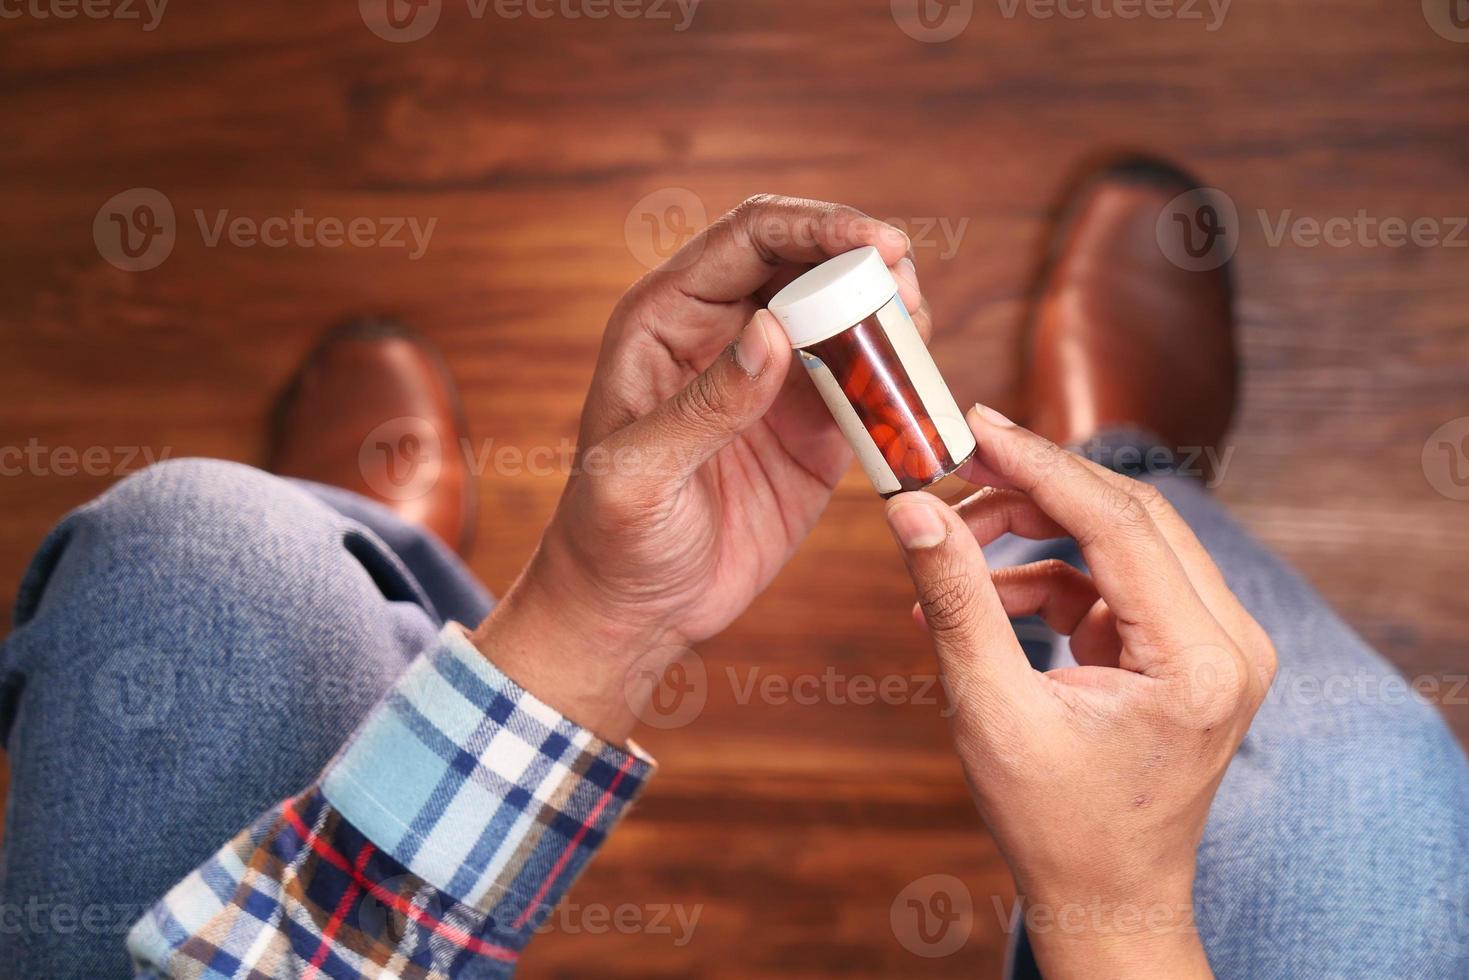 pessoa segurando um frasco de comprimidos foto